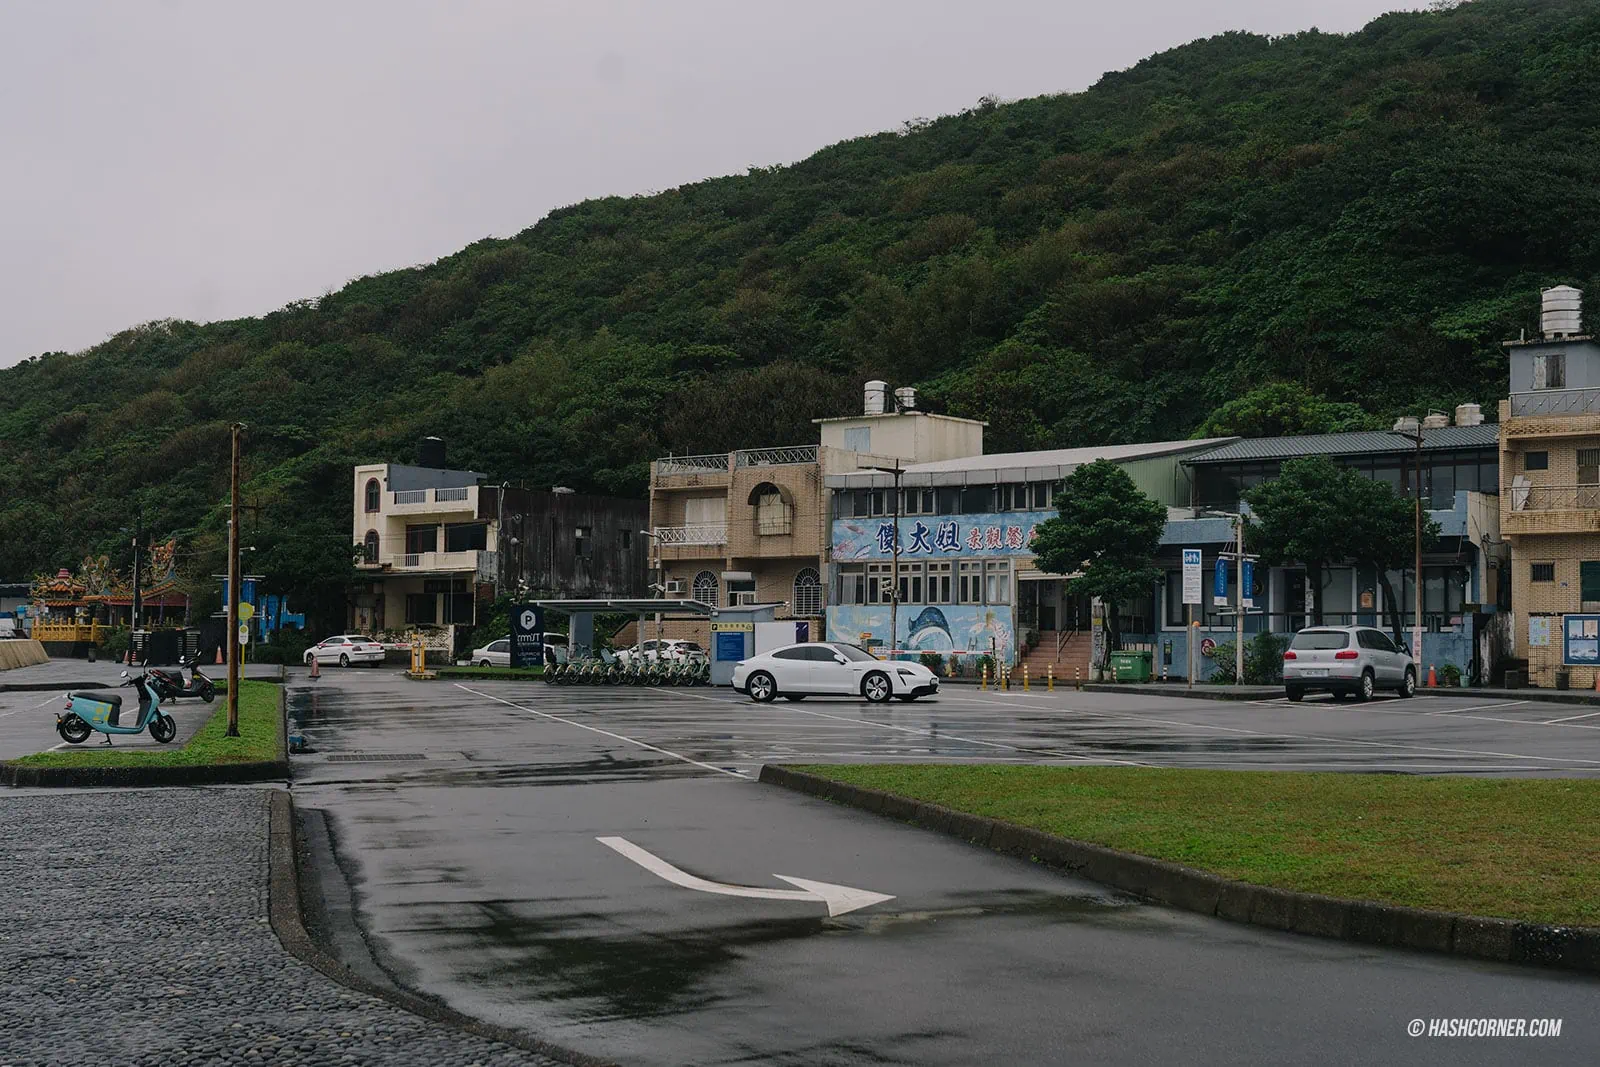 รีวิว นิวไทเป (New Taipei City) x ไต้หวัน ขับรถเที่ยวธรรมชาติชายฝั่ง [Taiwan Road Trip EP.1]